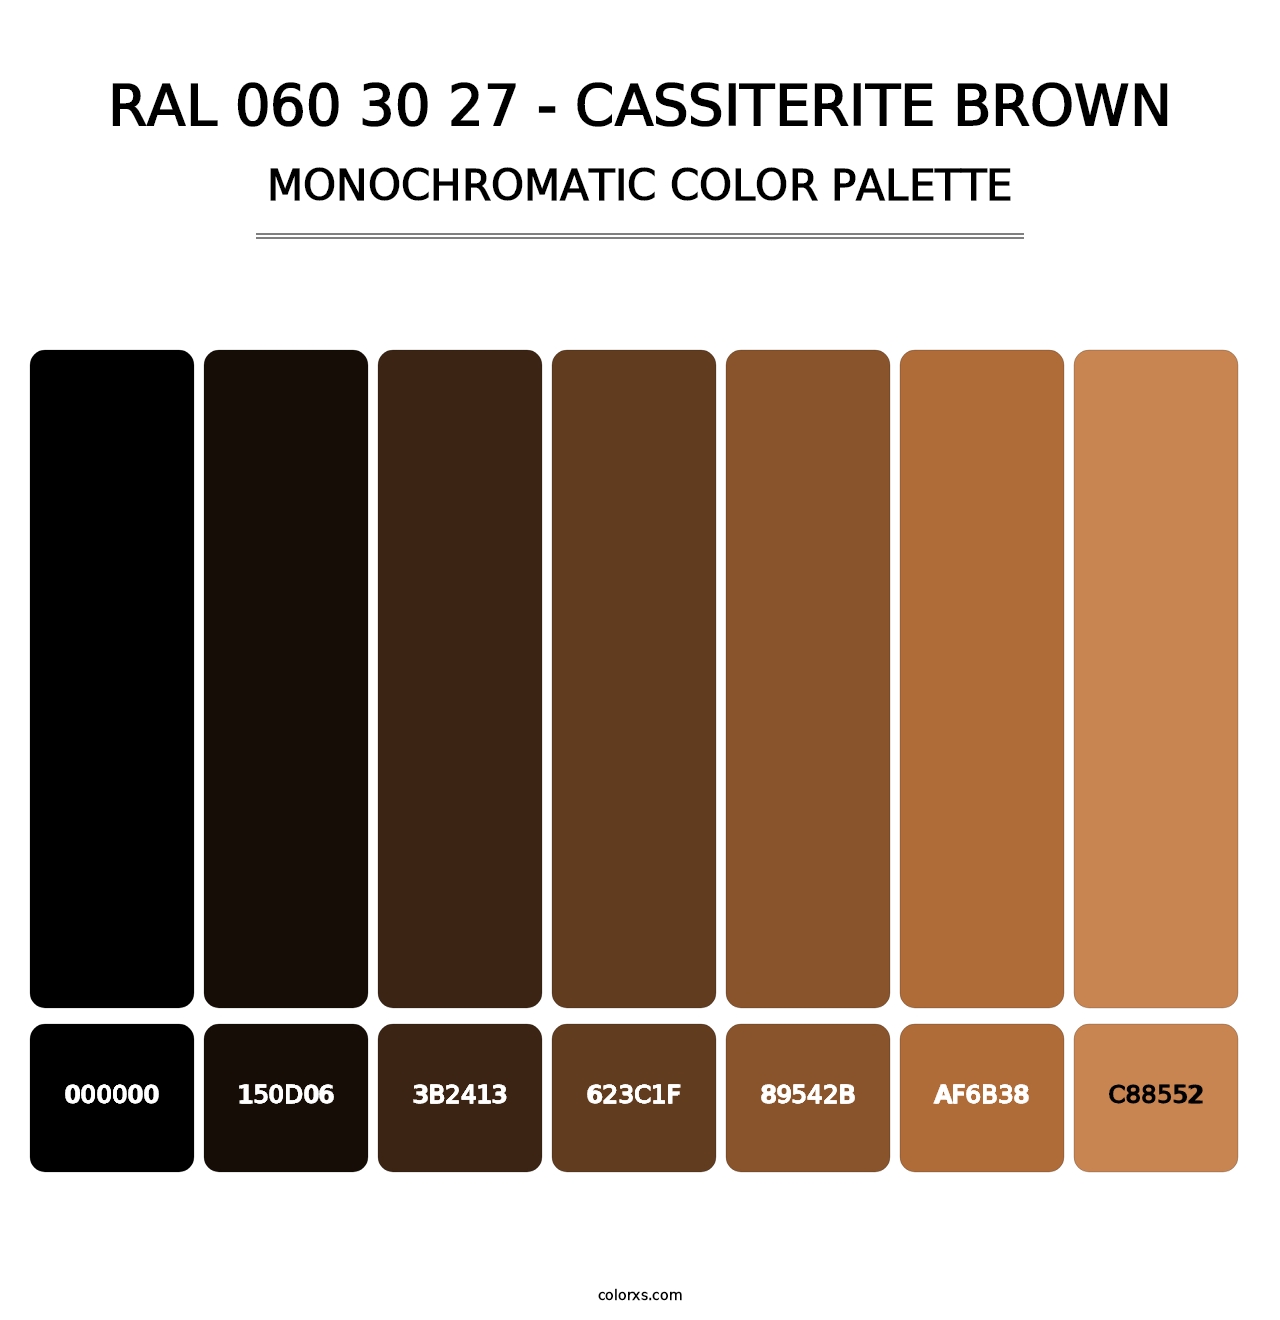 RAL 060 30 27 - Cassiterite Brown - Monochromatic Color Palette